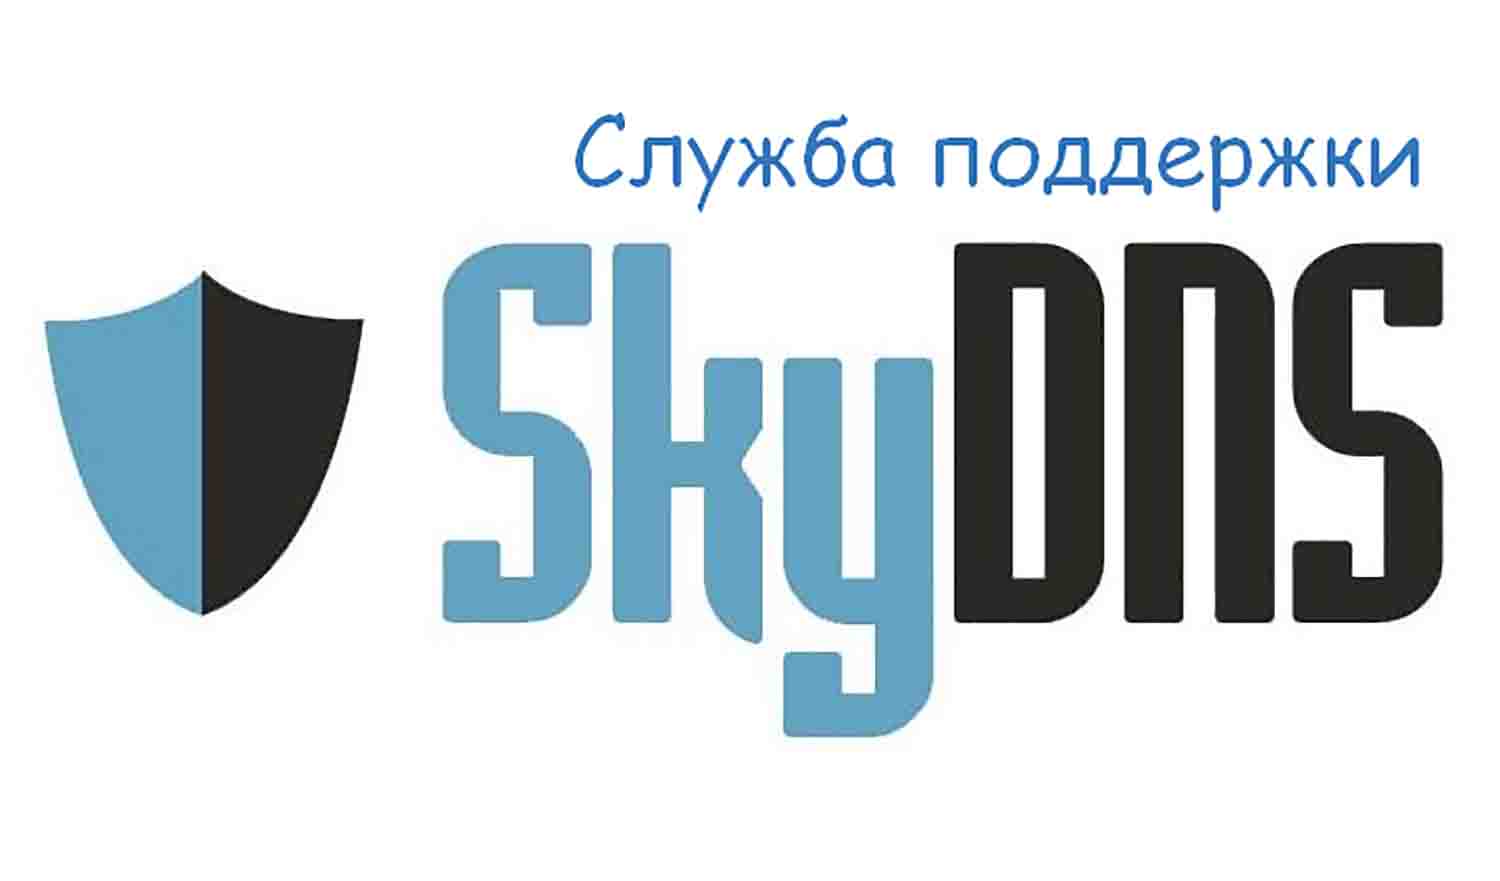 Техническая поддержка SkyDNS, горячая линия, служба поддержки